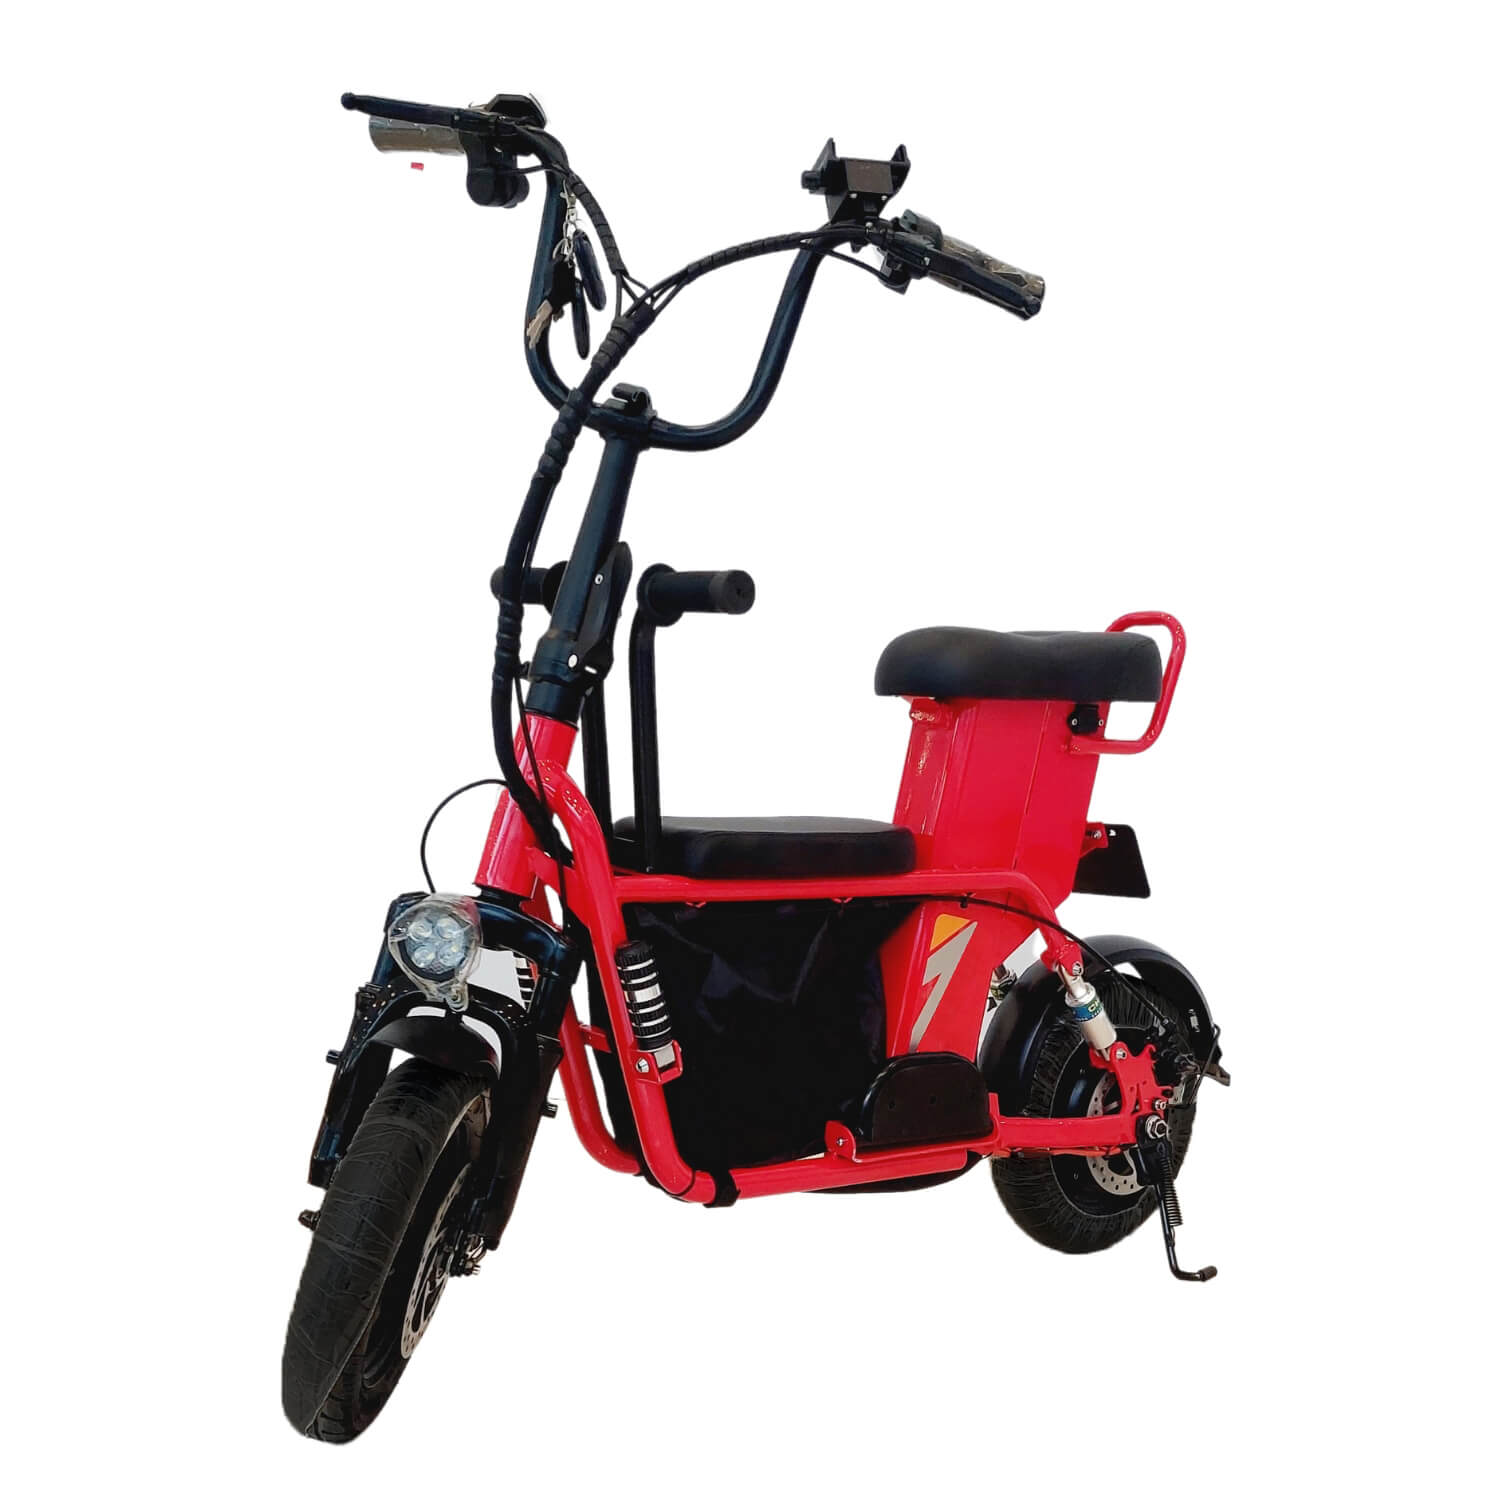 Megawheels Scoobike 48 v Electric Bike - Red